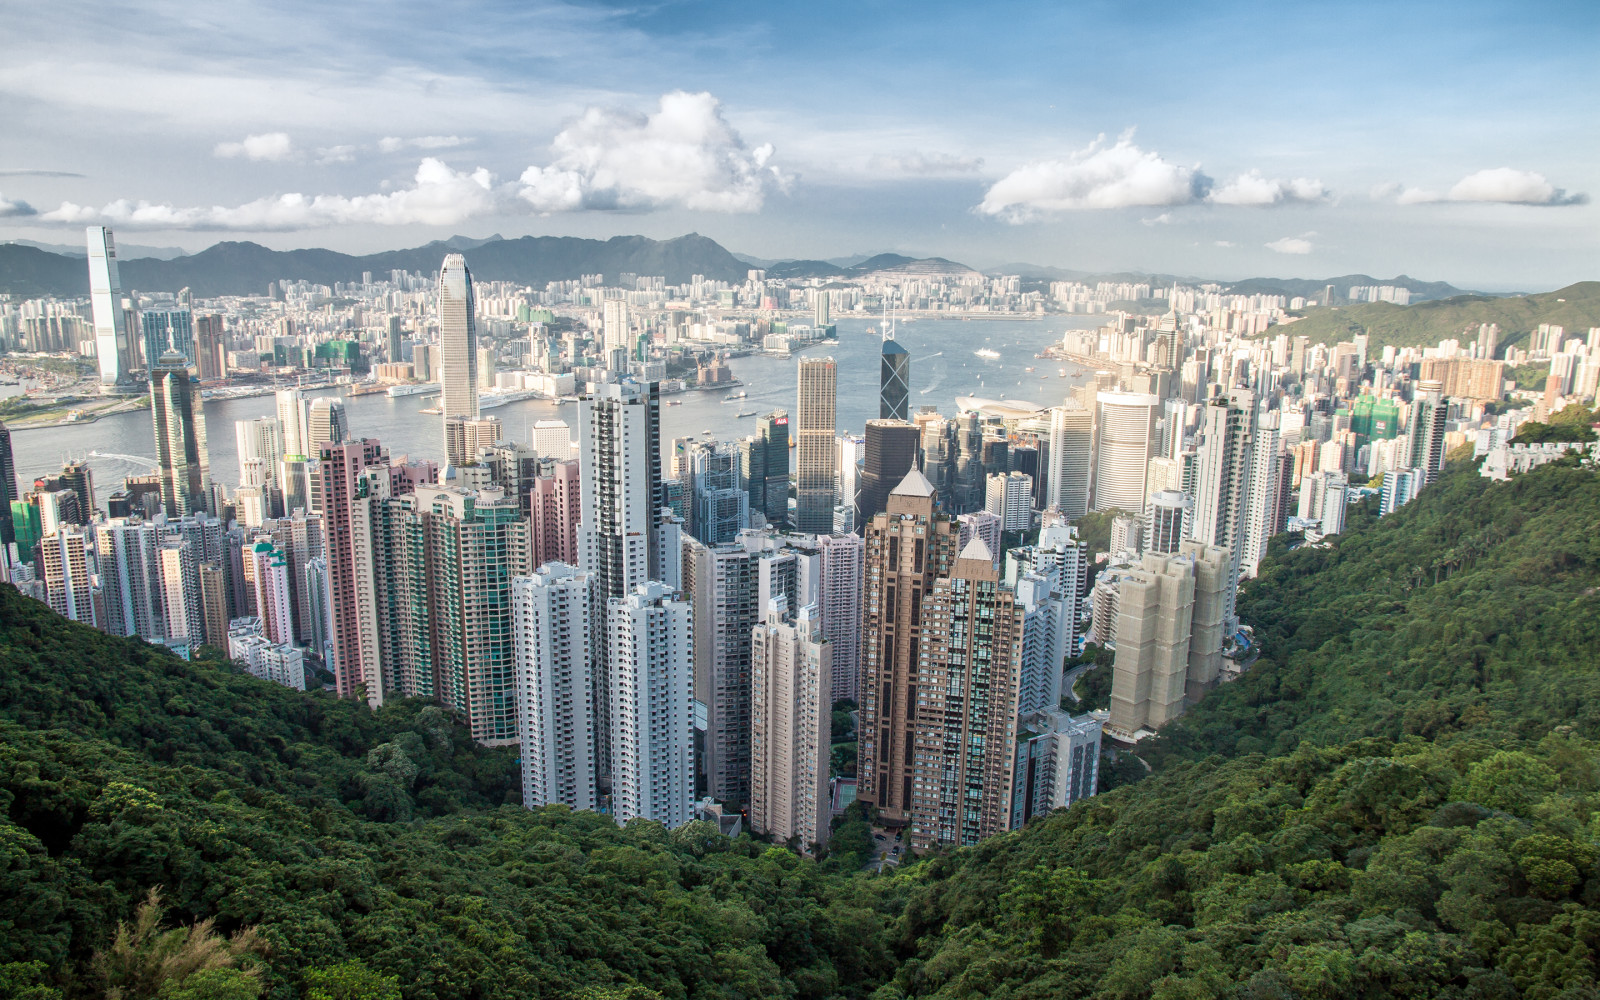 thành phố, núi, tòa nhà chọc trời, bức tranh toàn cảnh, Hồng Kông